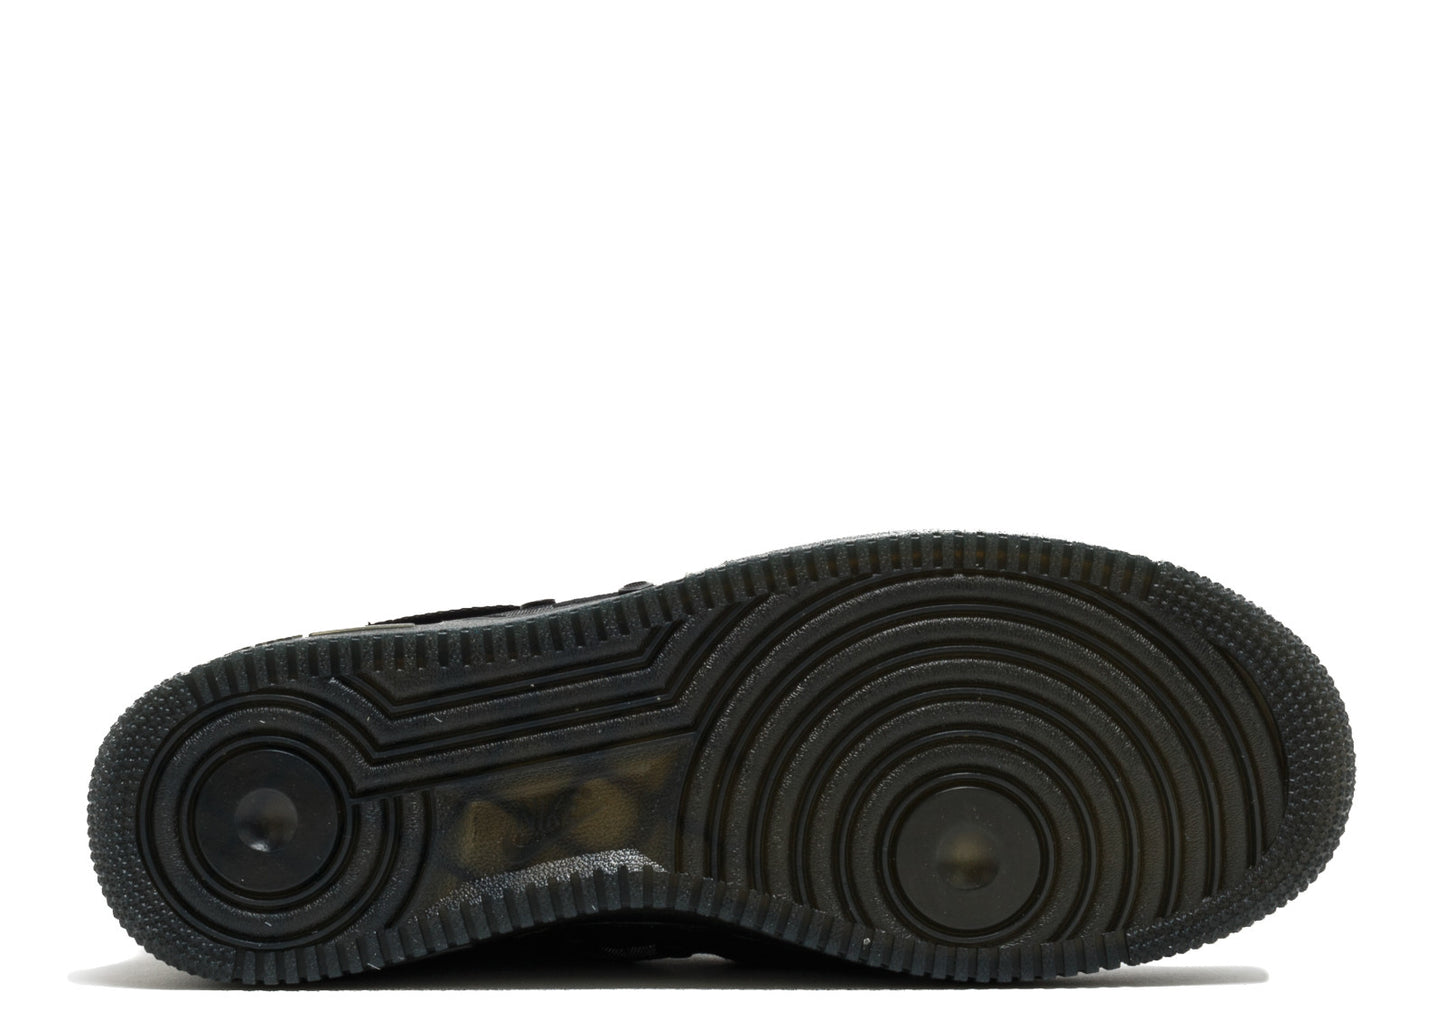 Nike SF Air Force 1 Mid QS "Black Cargo Khaki"